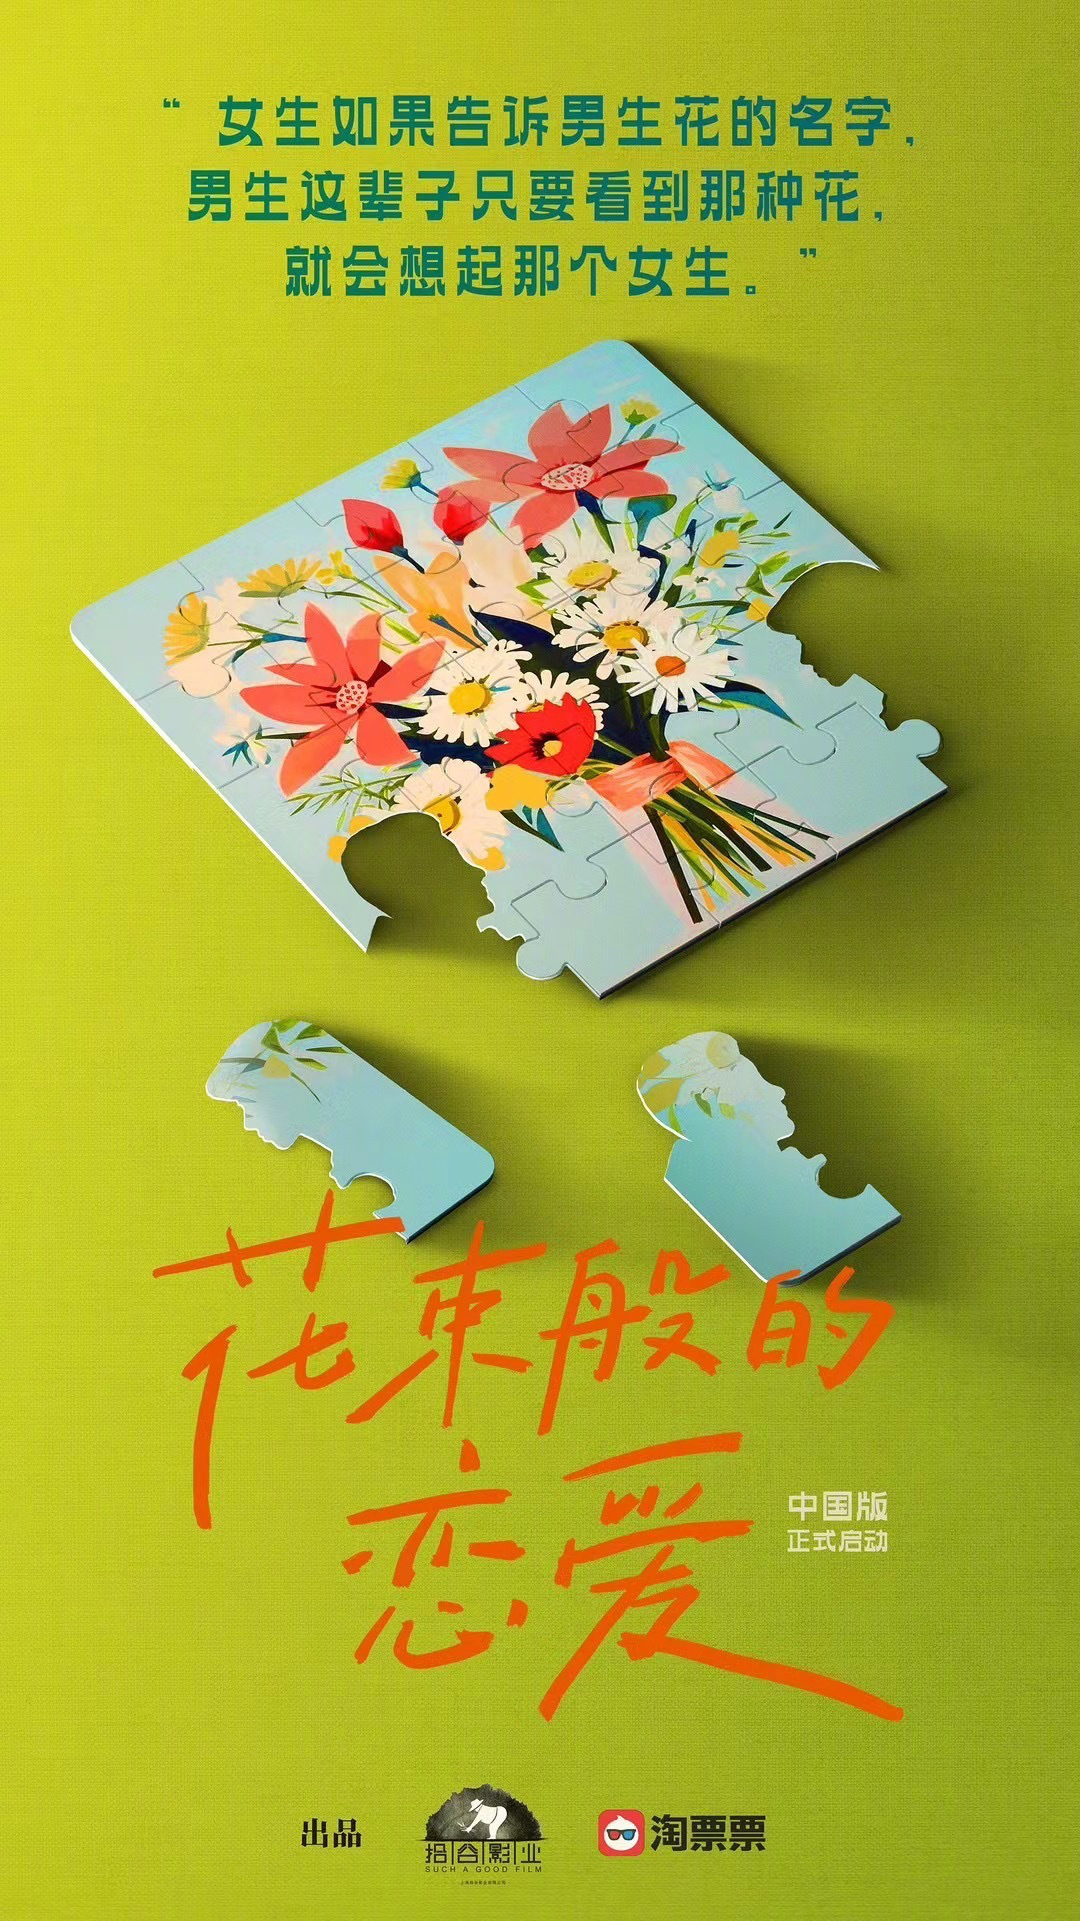 中国翻拍版《花束般的恋爱》曝海报 预计明年杀青